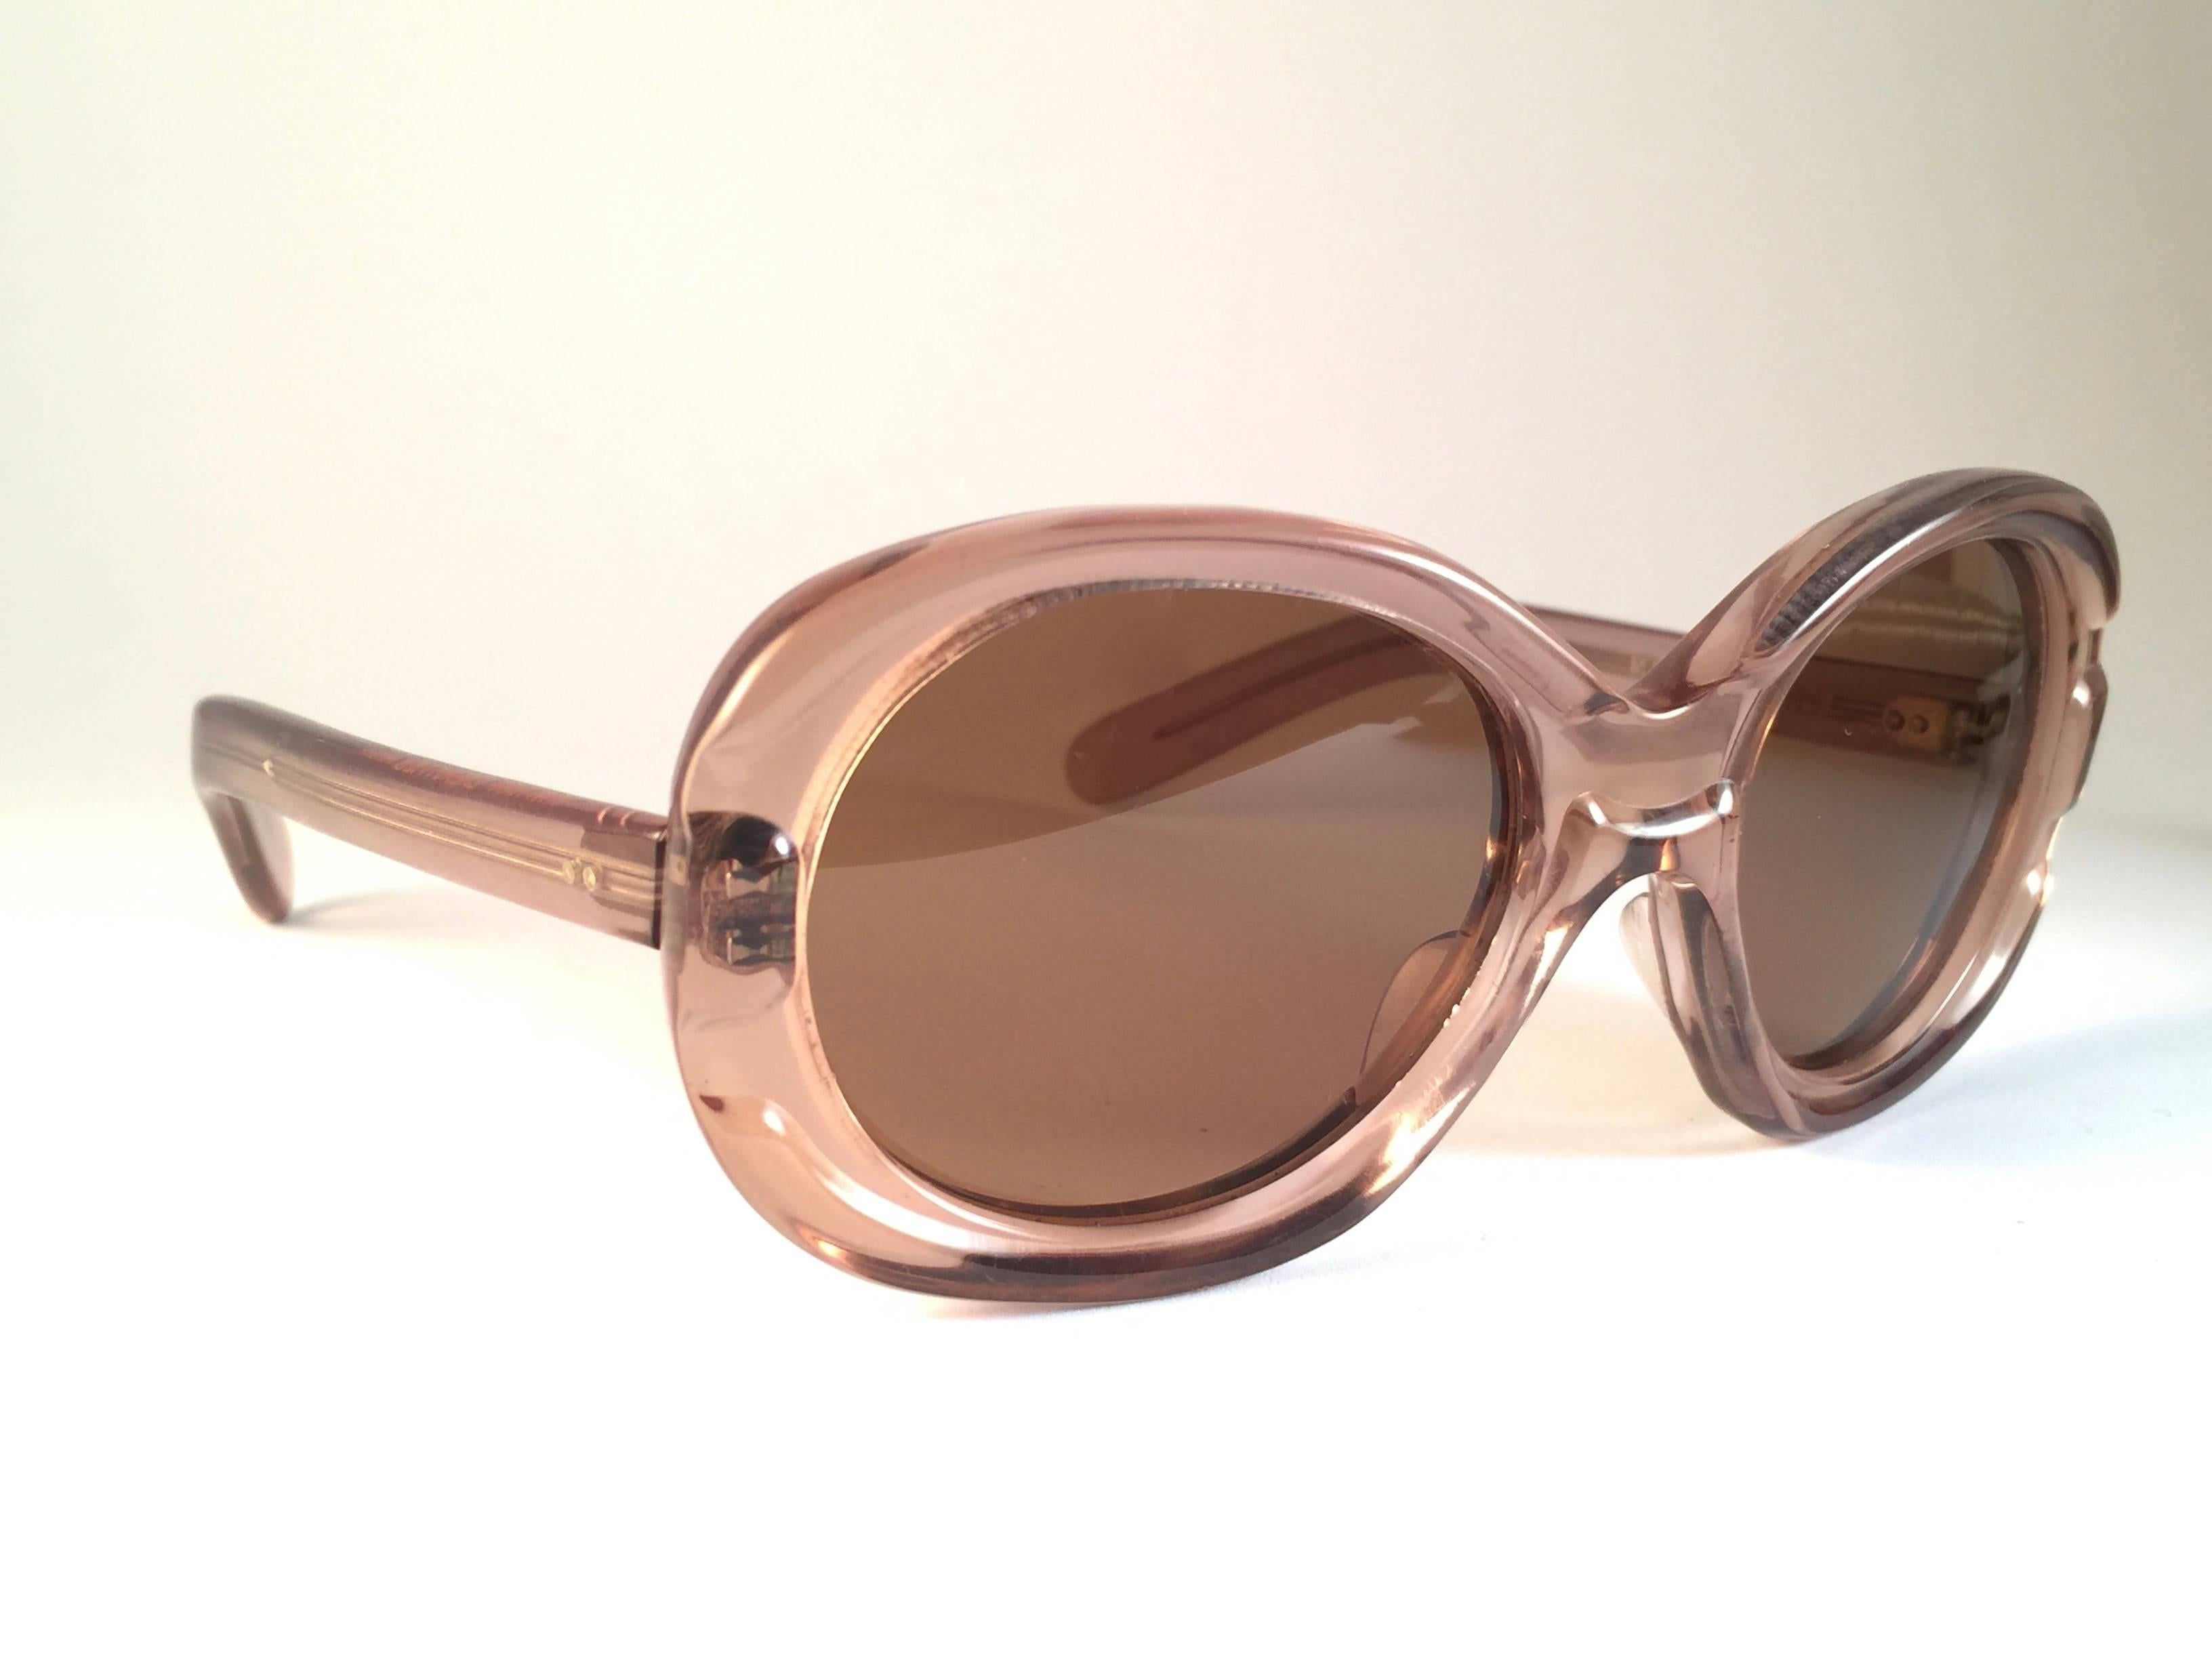 Nouvelles et rares lunettes de soleil vintage Philippe Chevalier rose clair avec des verres marron moyen.   
Une superbe trouvaille en état neuf, jamais porté. 
Veuillez noter que cet article peut présenter des signes d'usure plus lents dus au